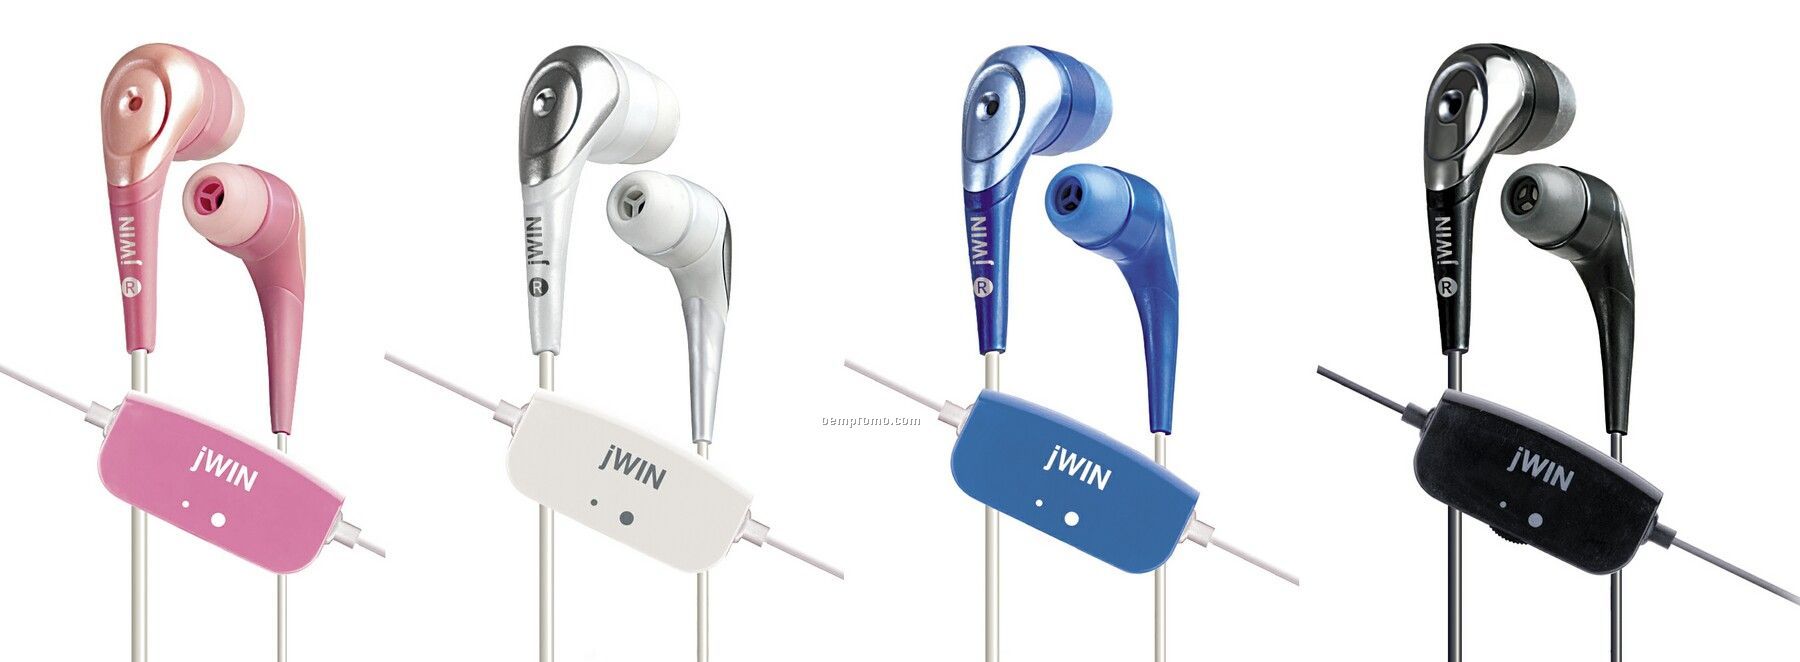 Jwin Stereo In-ear Earphones W/ Vc